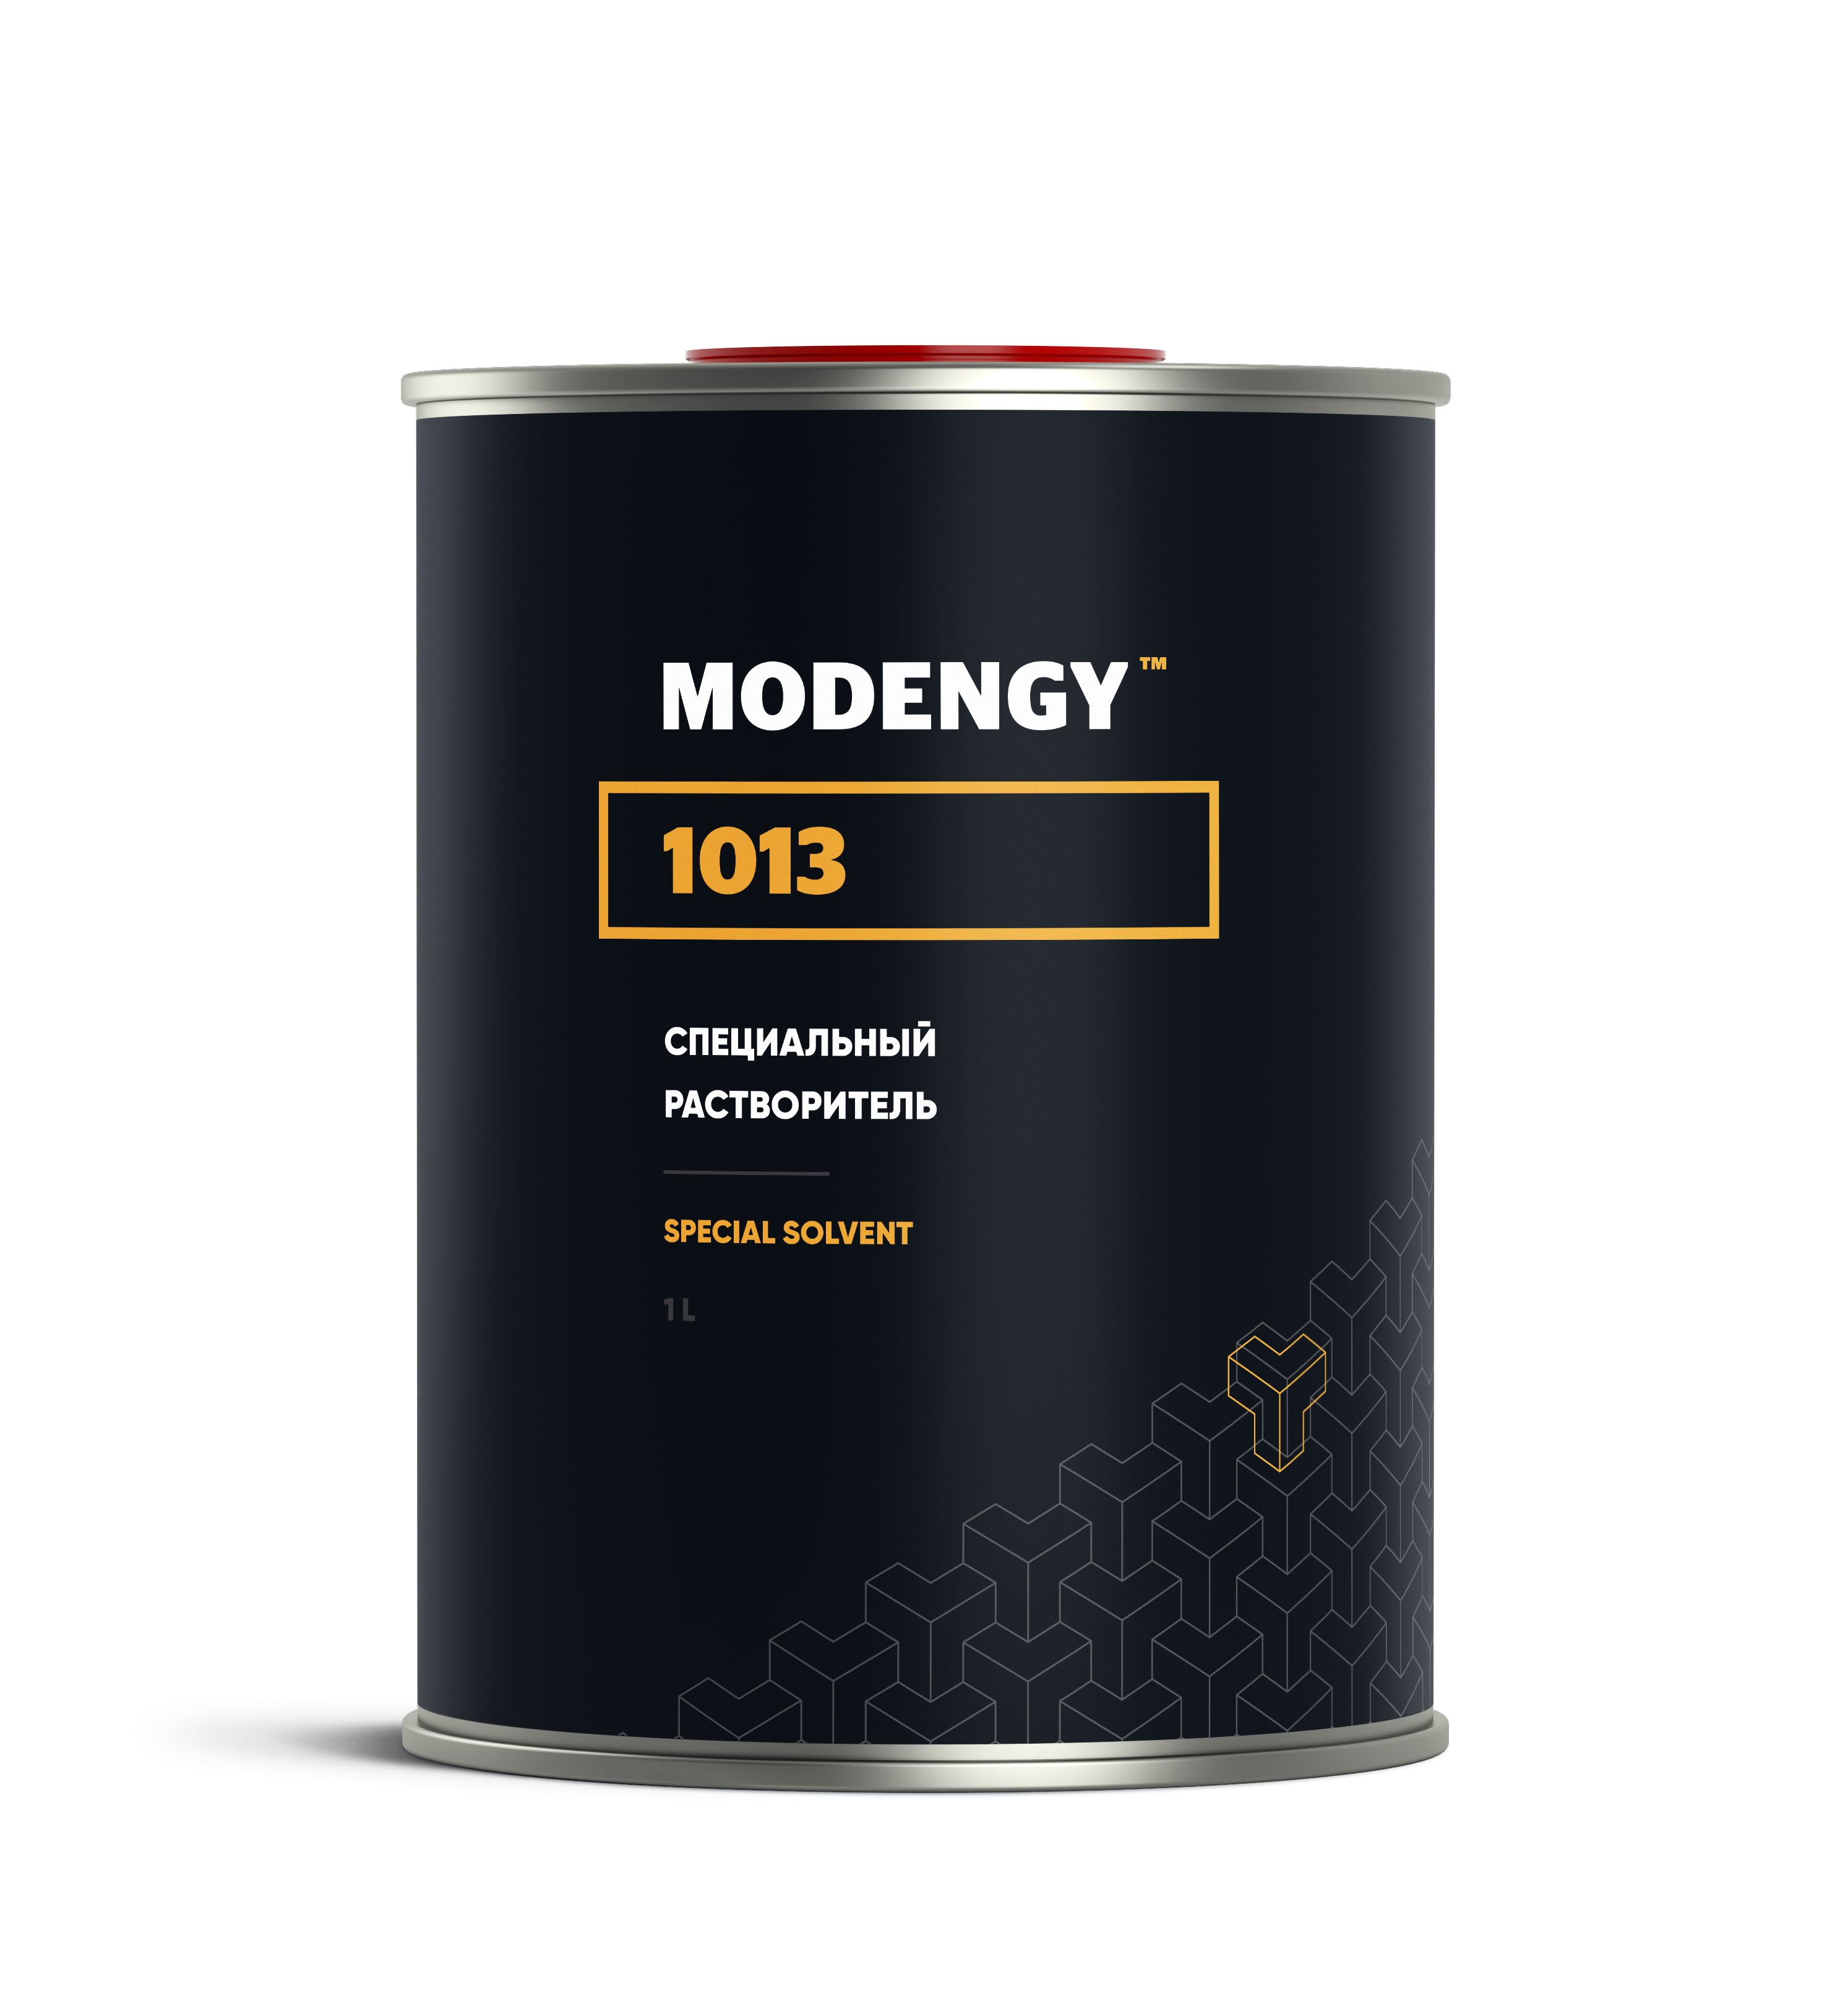 Специальный растворитель MODENGY 1013 (1 л) специальный растворитель modengy 1015 1 л